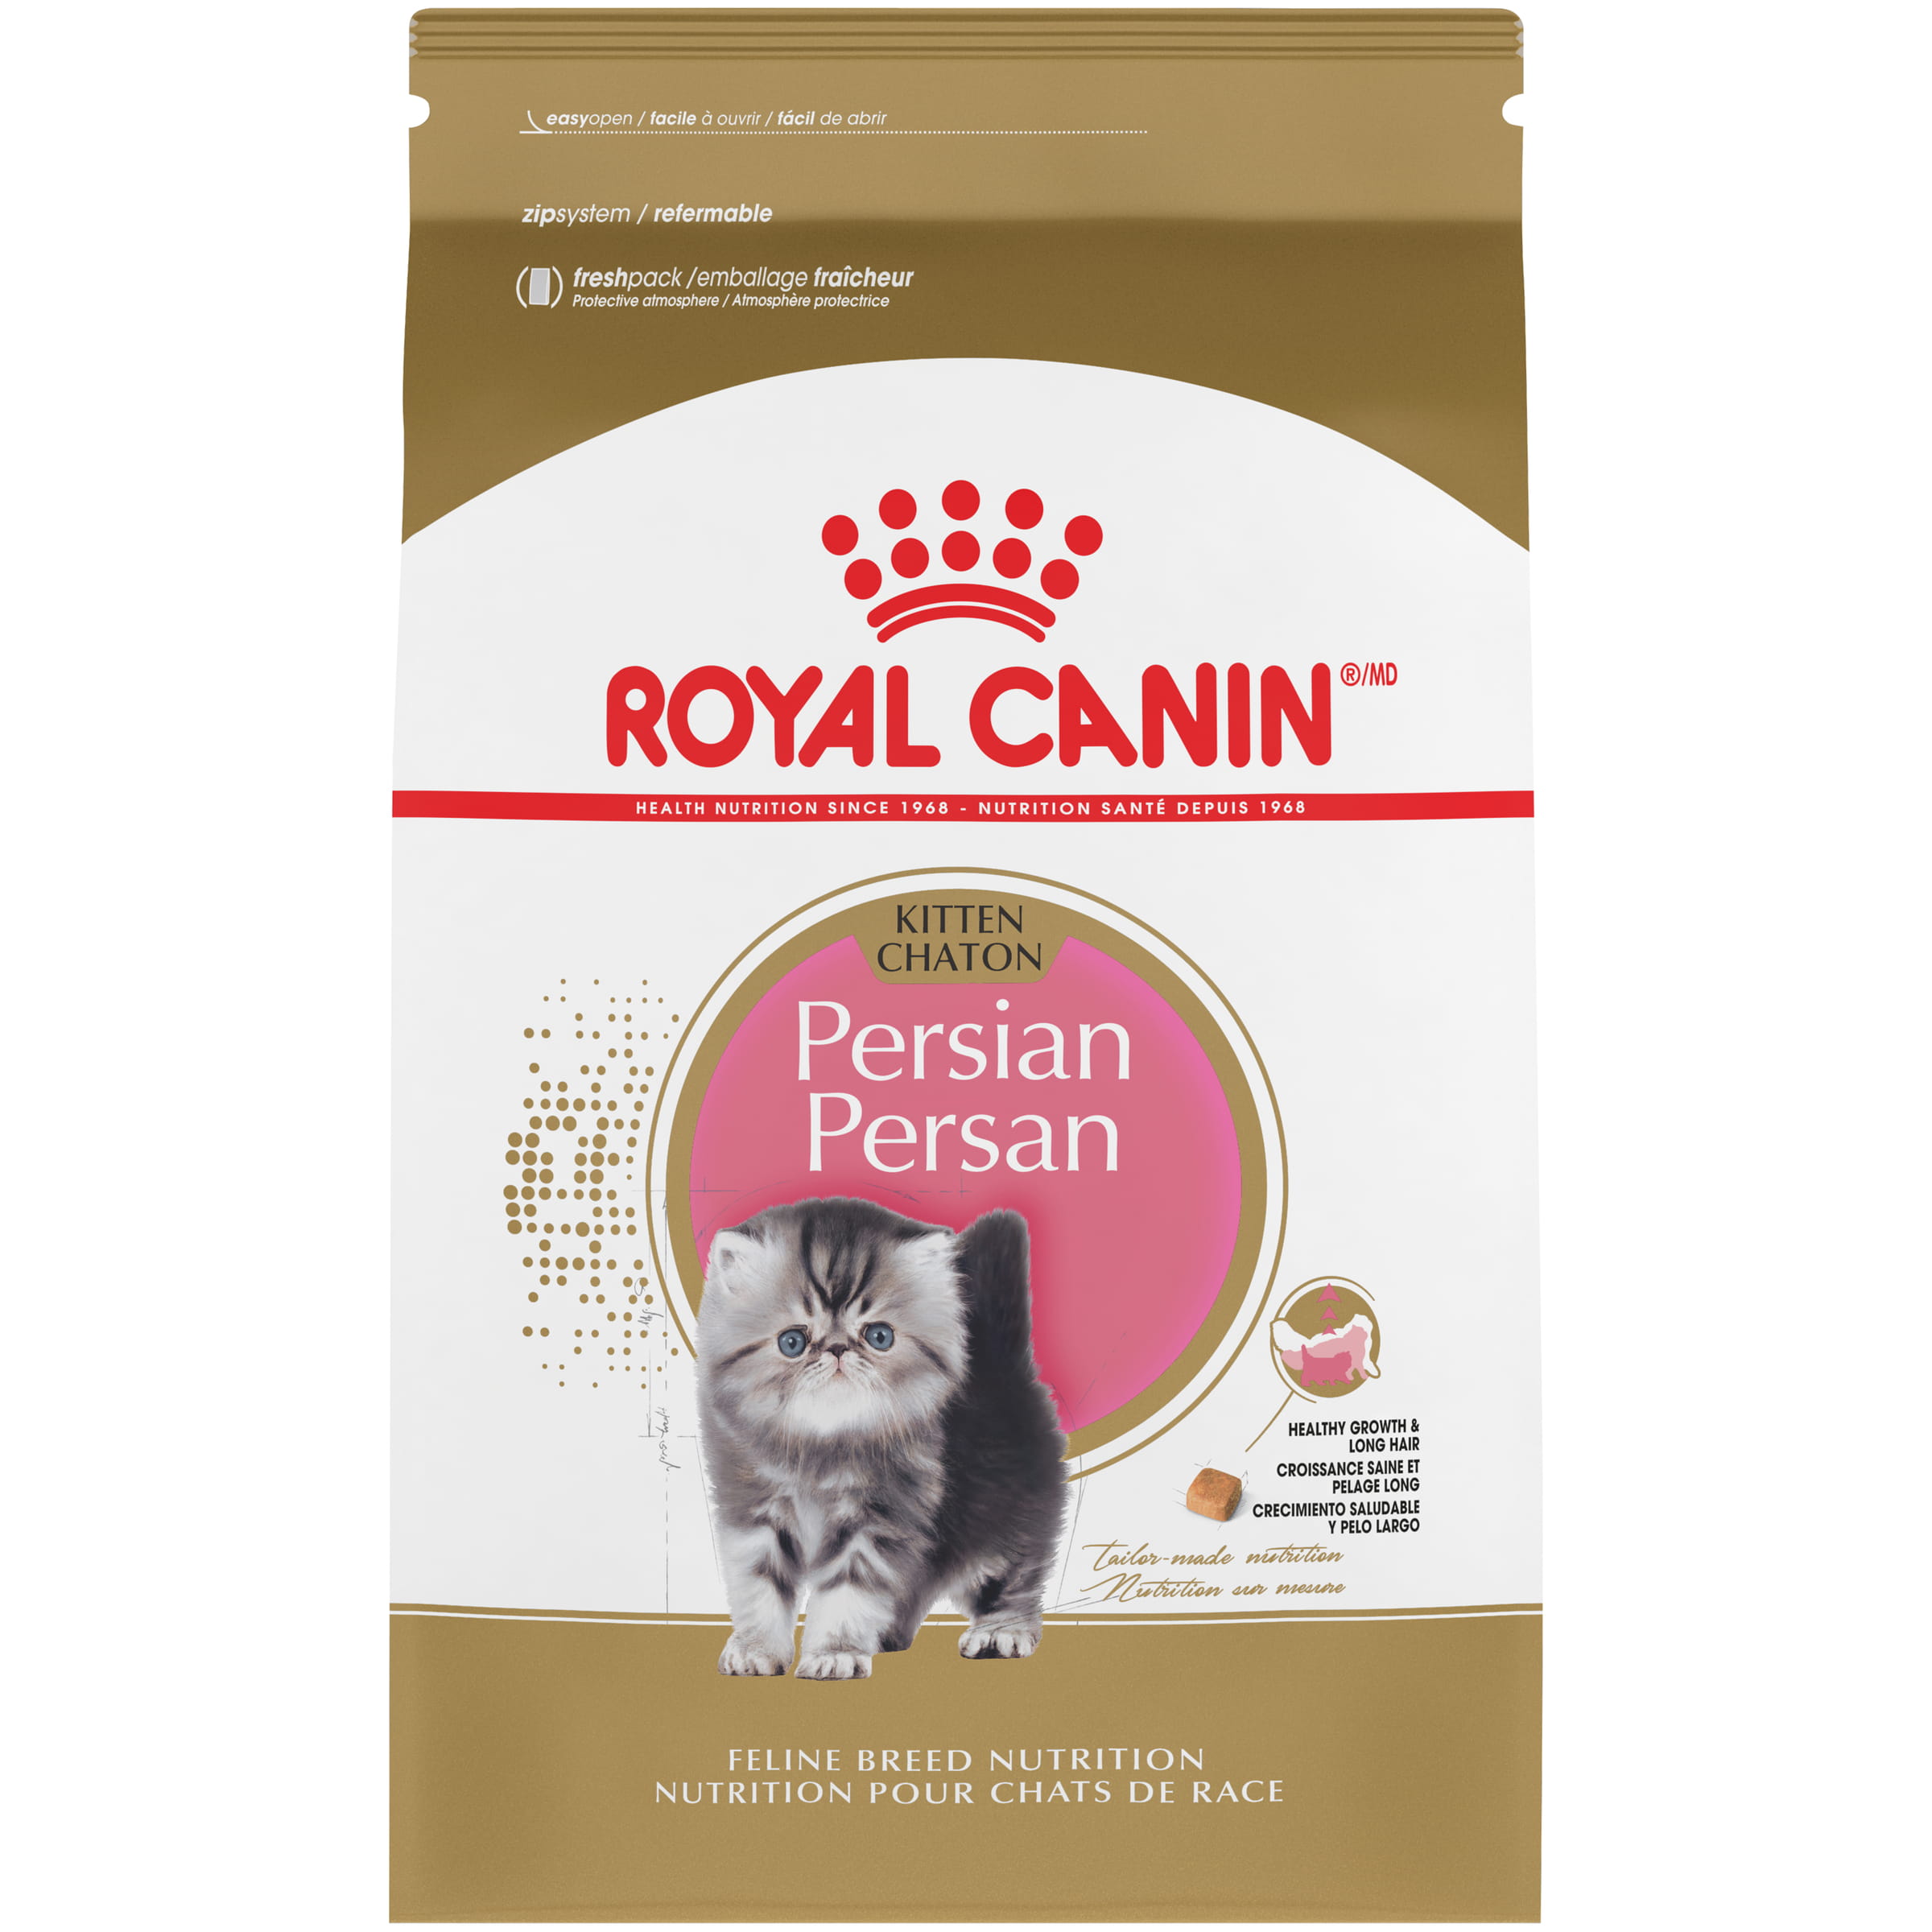 Royal Canin Persian Cat Food Reviews